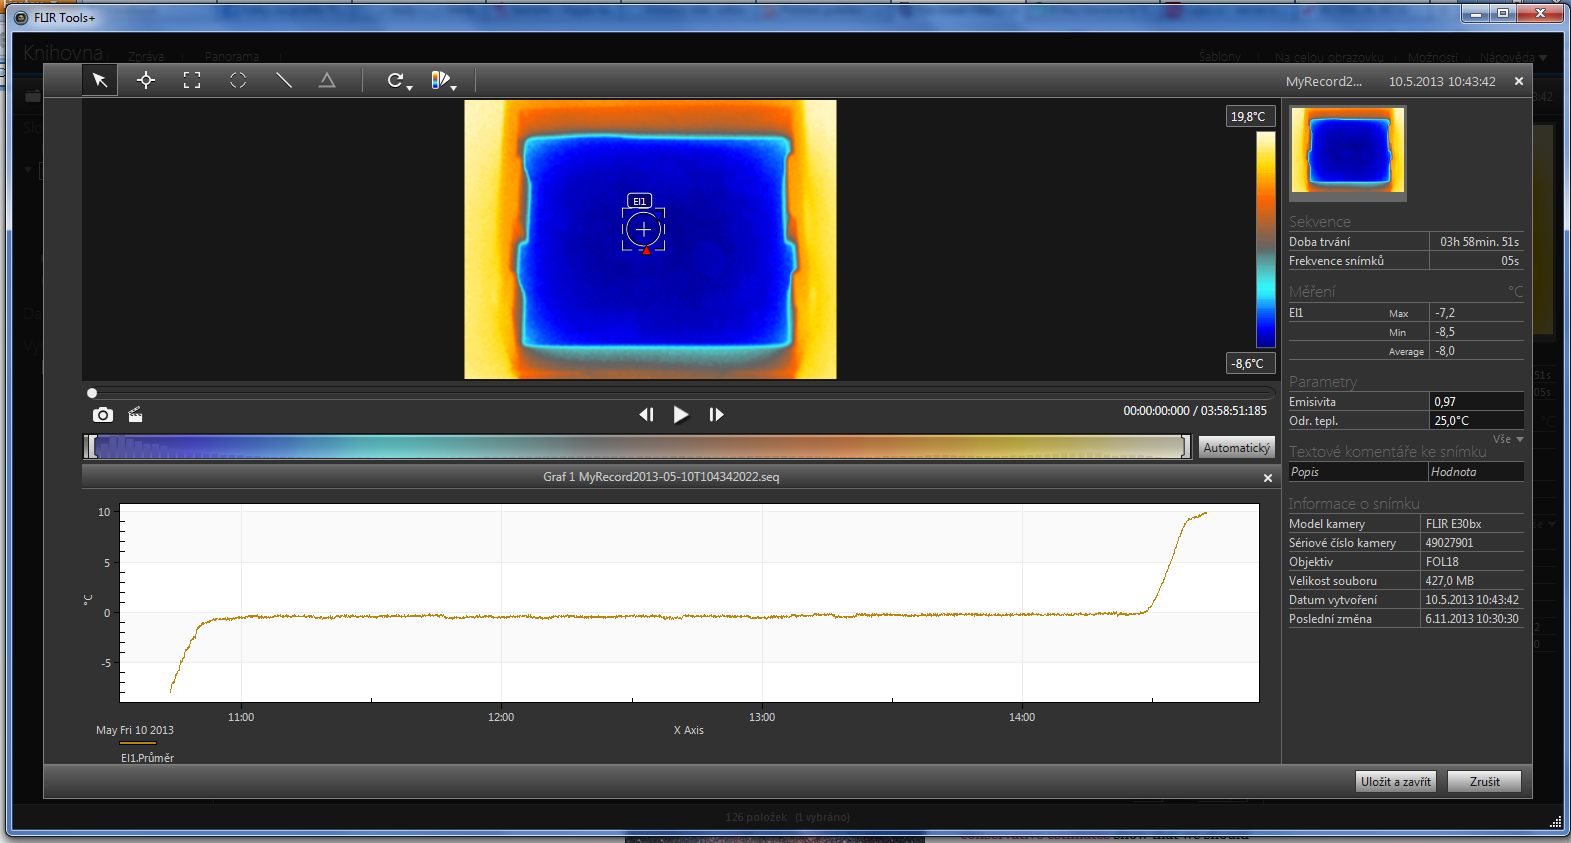 Radiometrická sekvence zaznamenaná termokamerou FLIR v SW FLIR TOOLS+